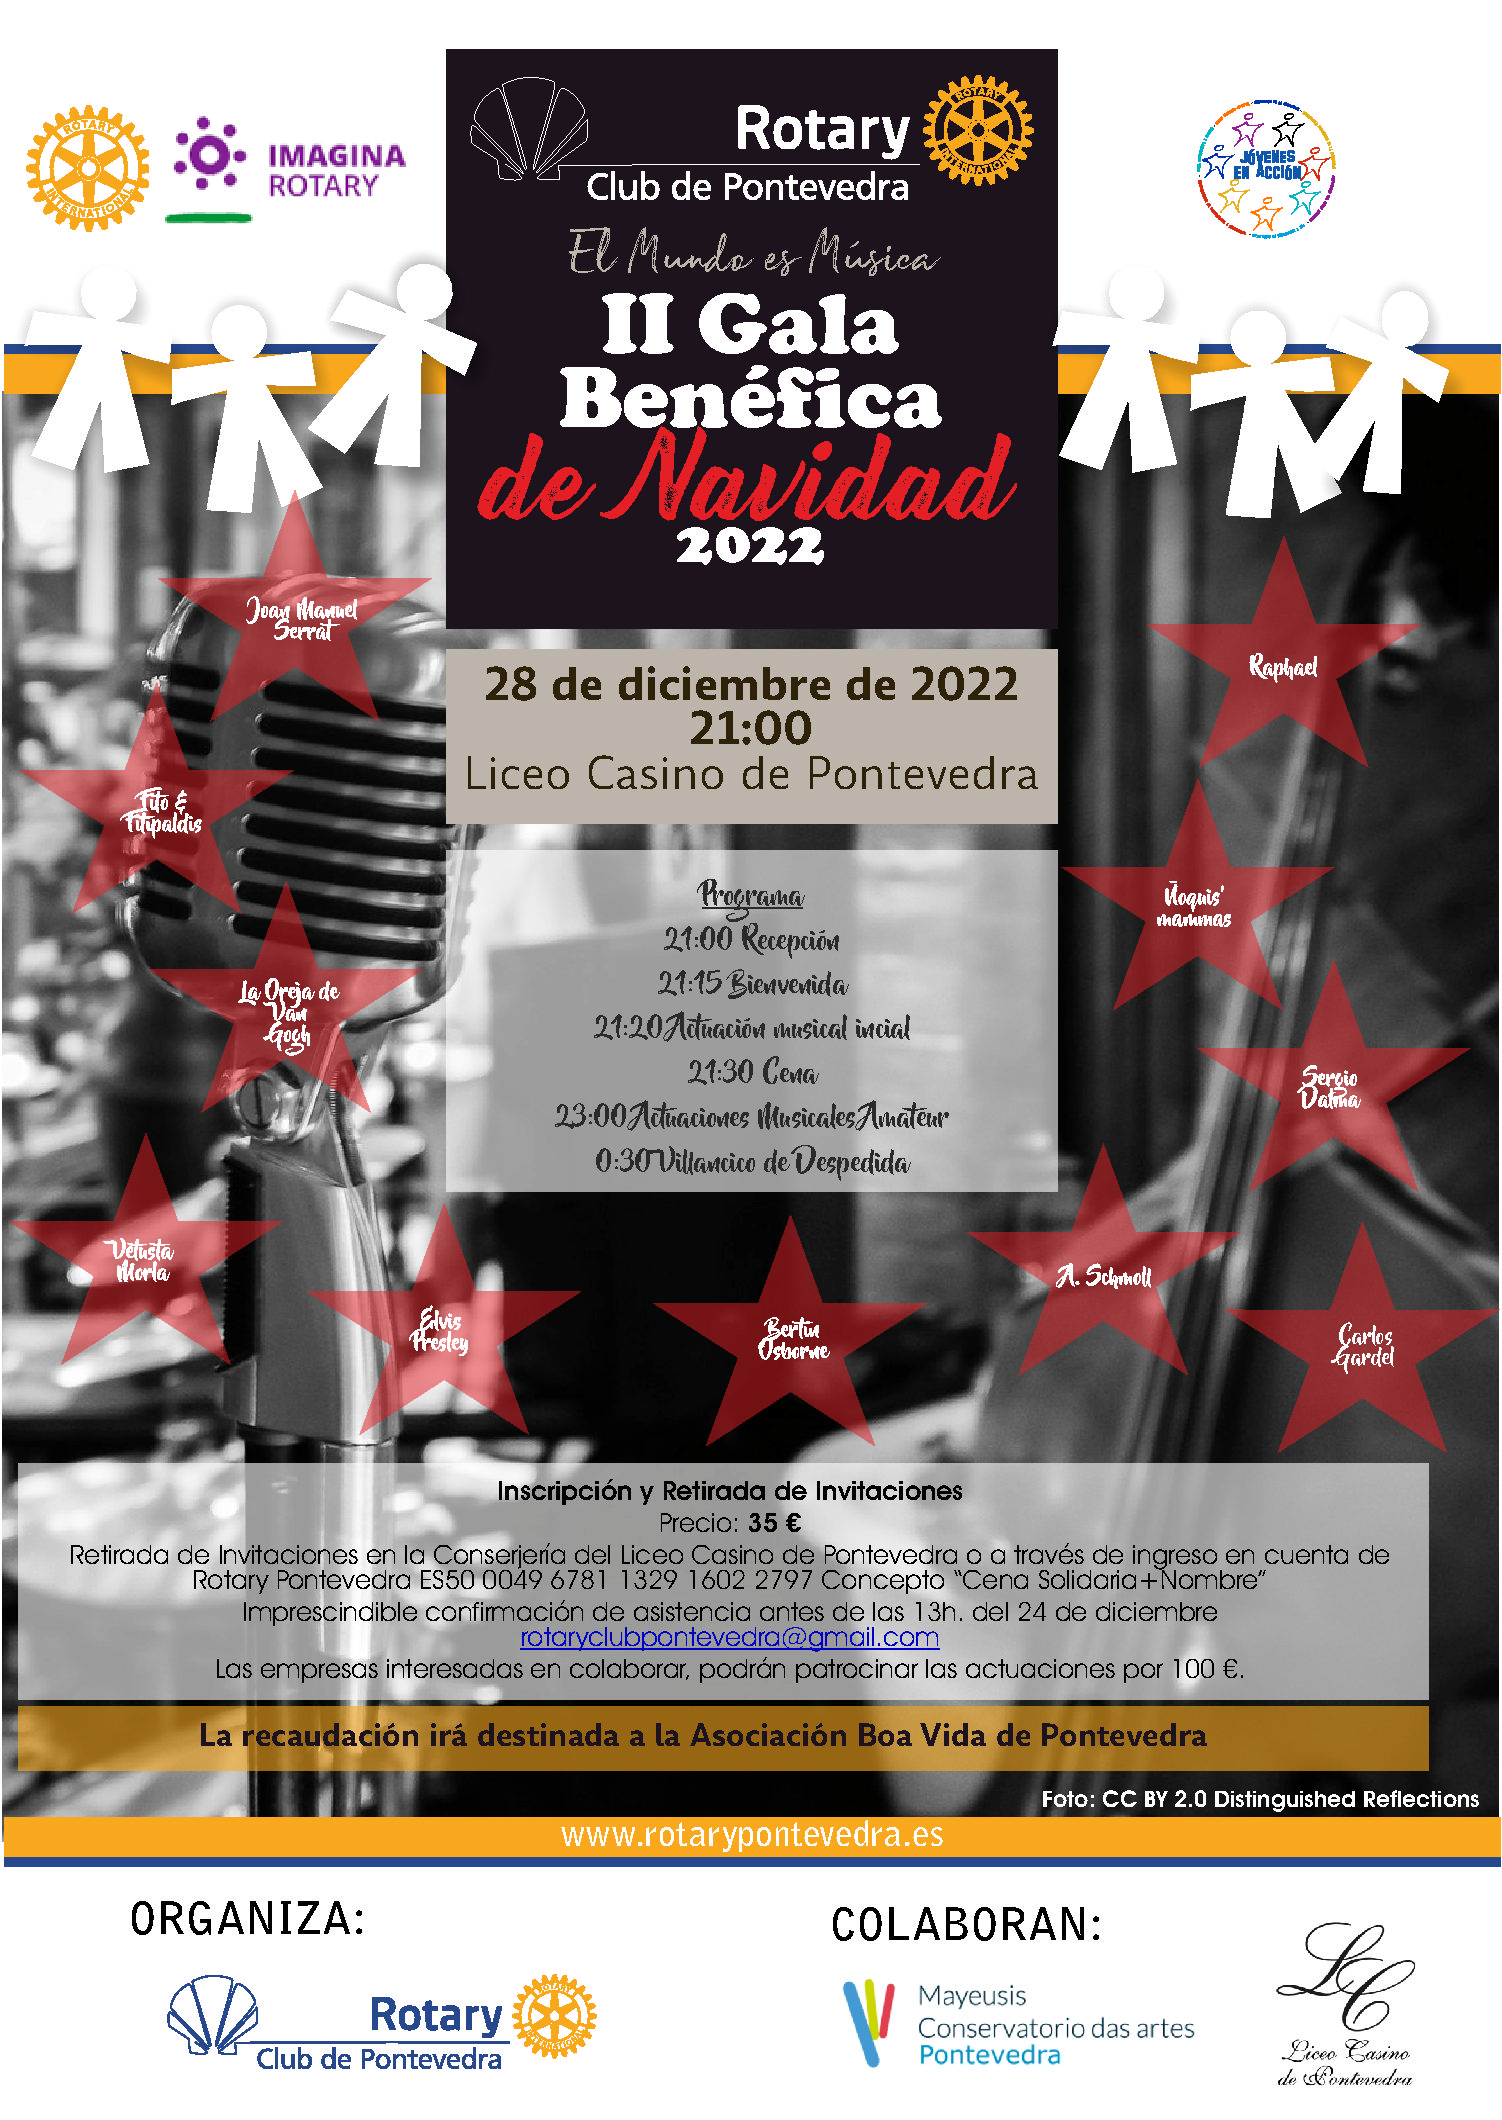 El Rotary Club de Pontevedra organiza: II Gala benéfica de Navidad